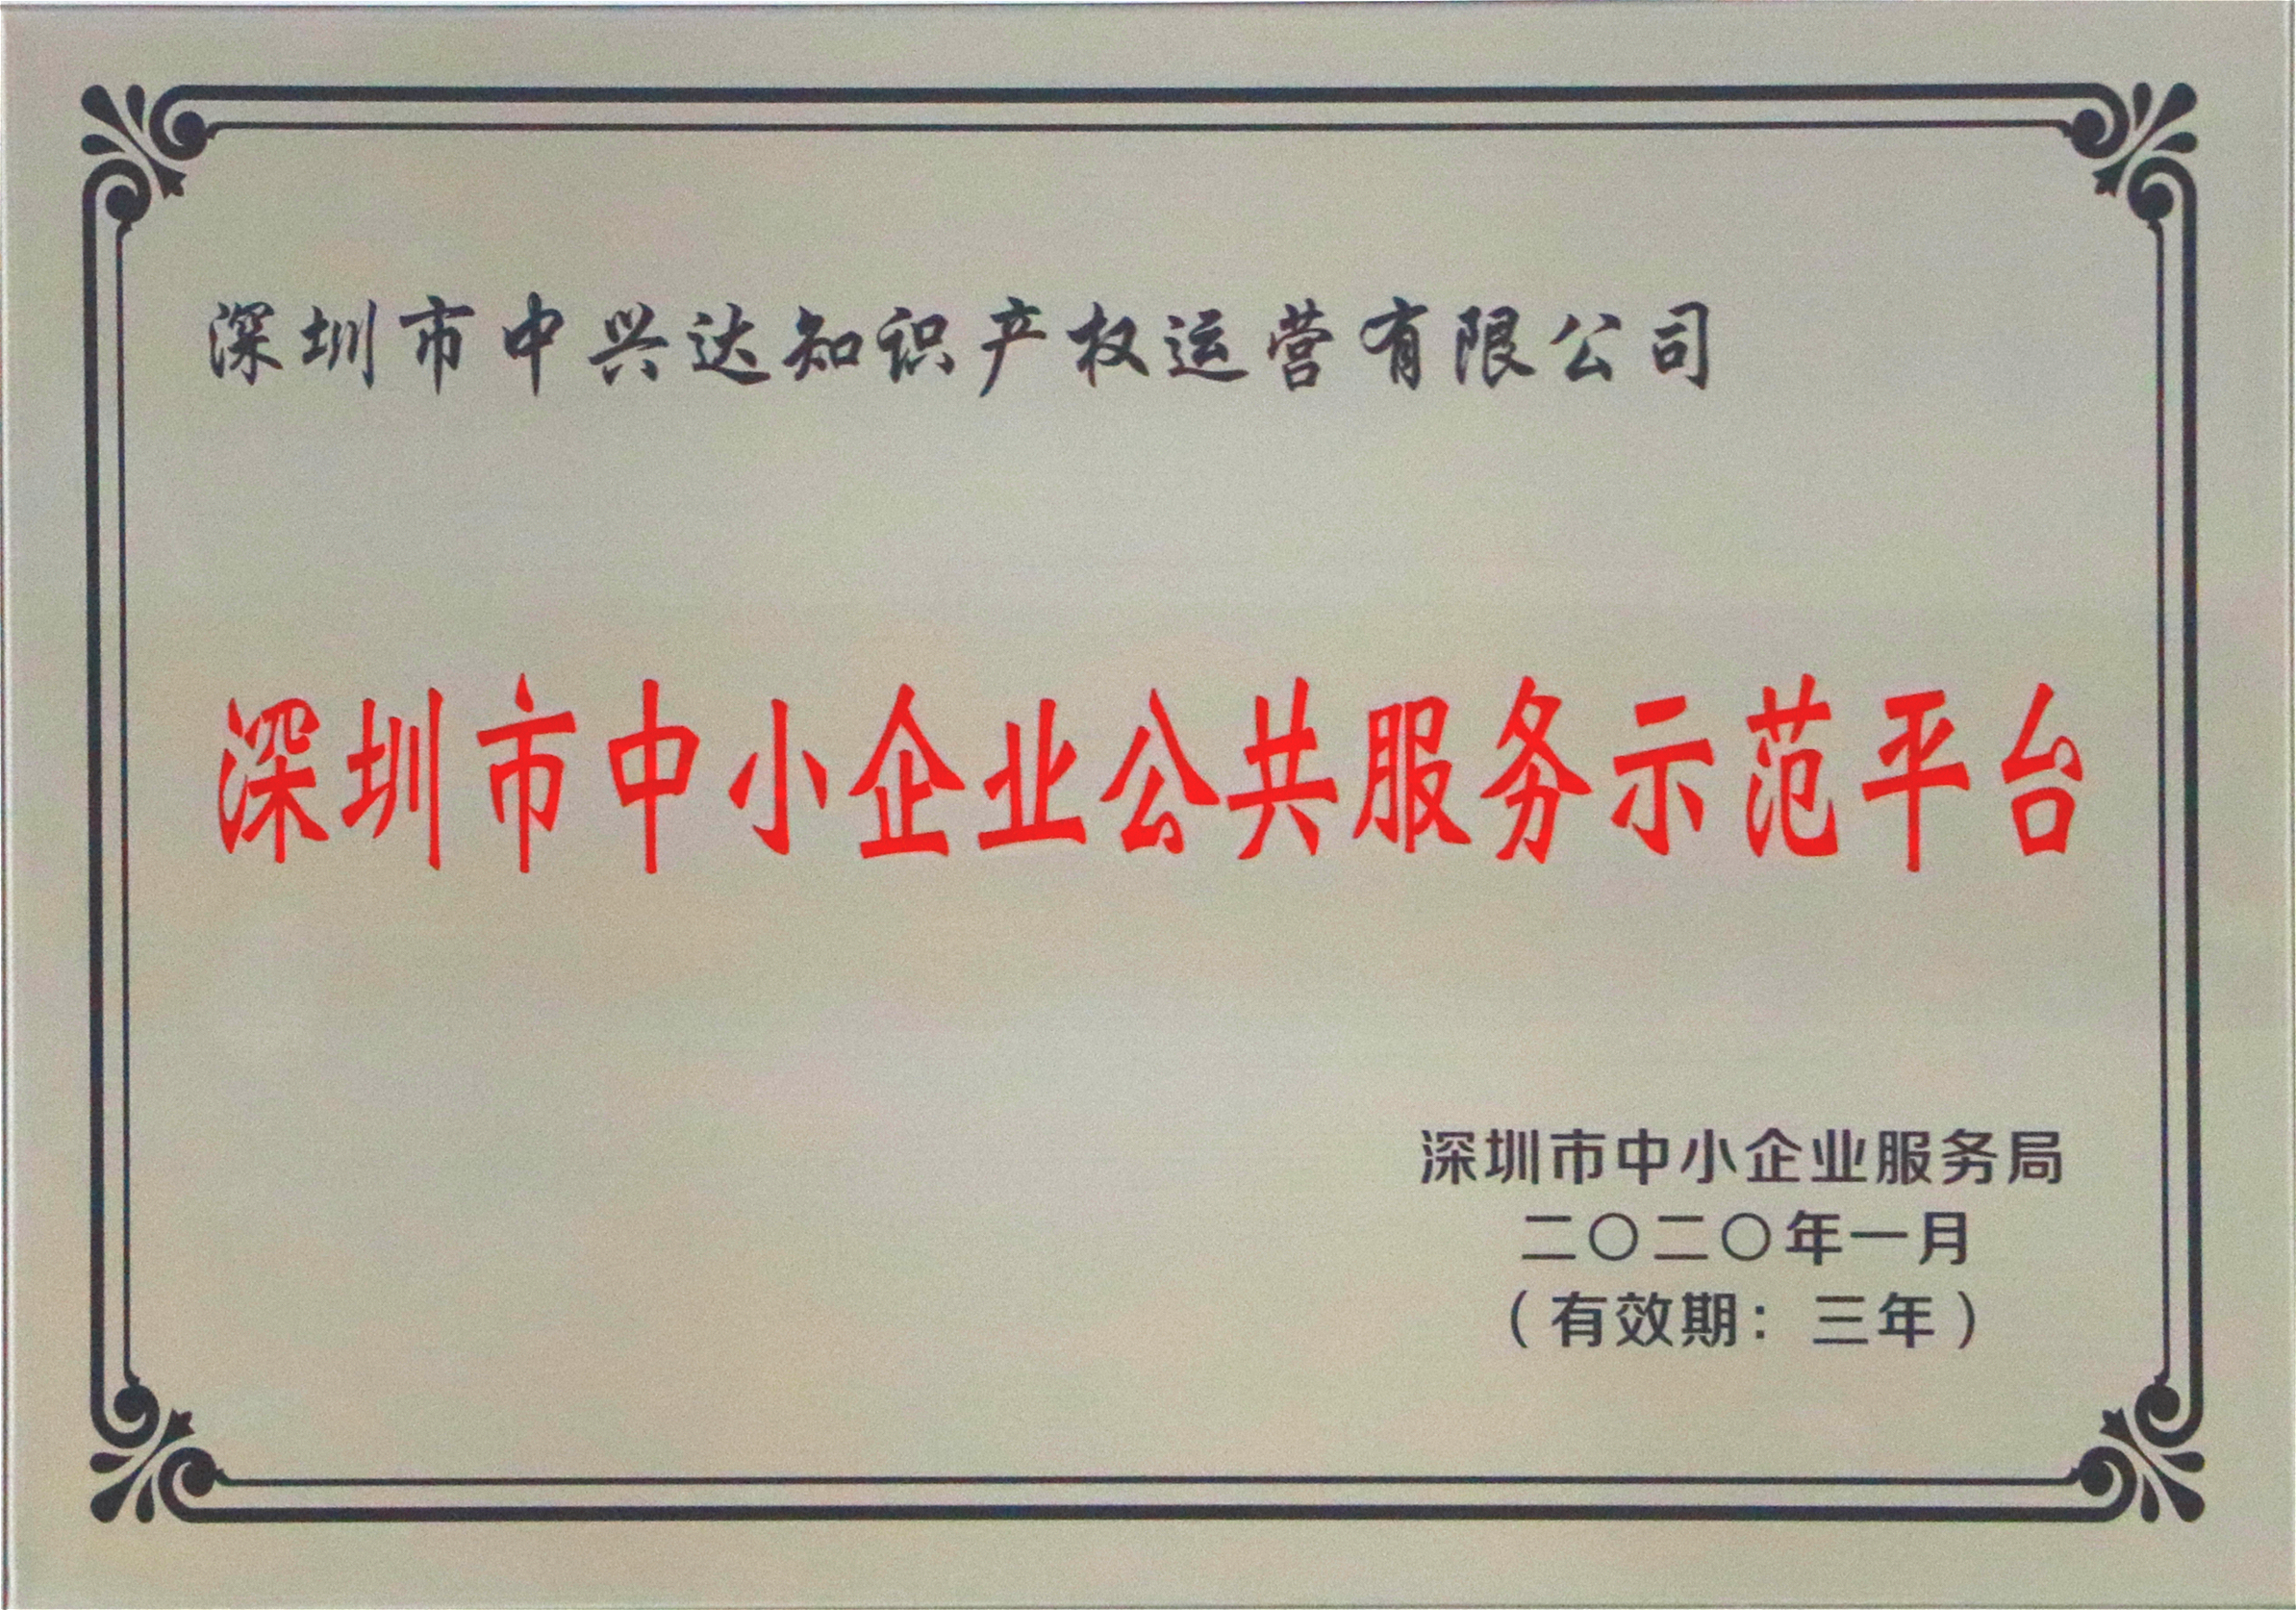 深圳市中小企业公共服务示范平台